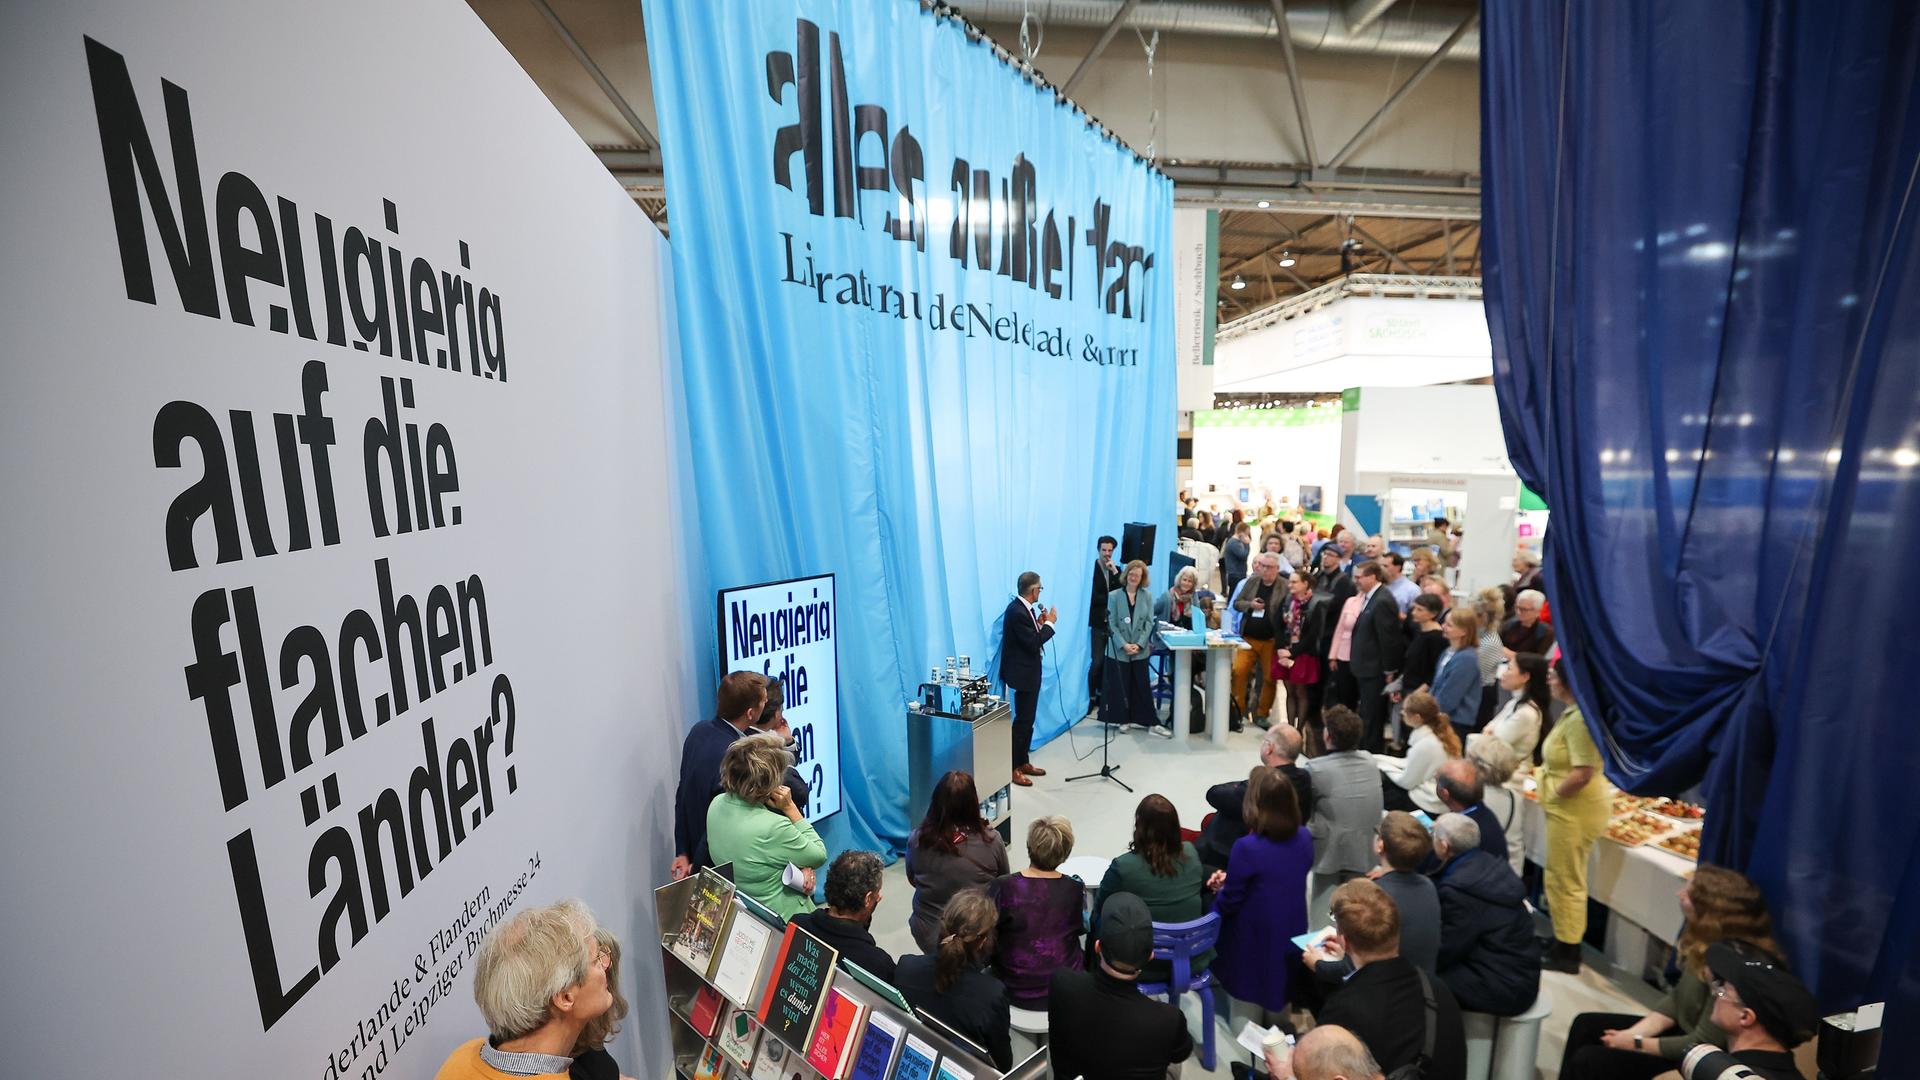 Messebesucher stehen am Stand der Niederlande, dem Gastland 2024, auf der Leipziger Buchmesse. Auf Planen ist zu lesen "Neugierig auf die flachen Länder?" 